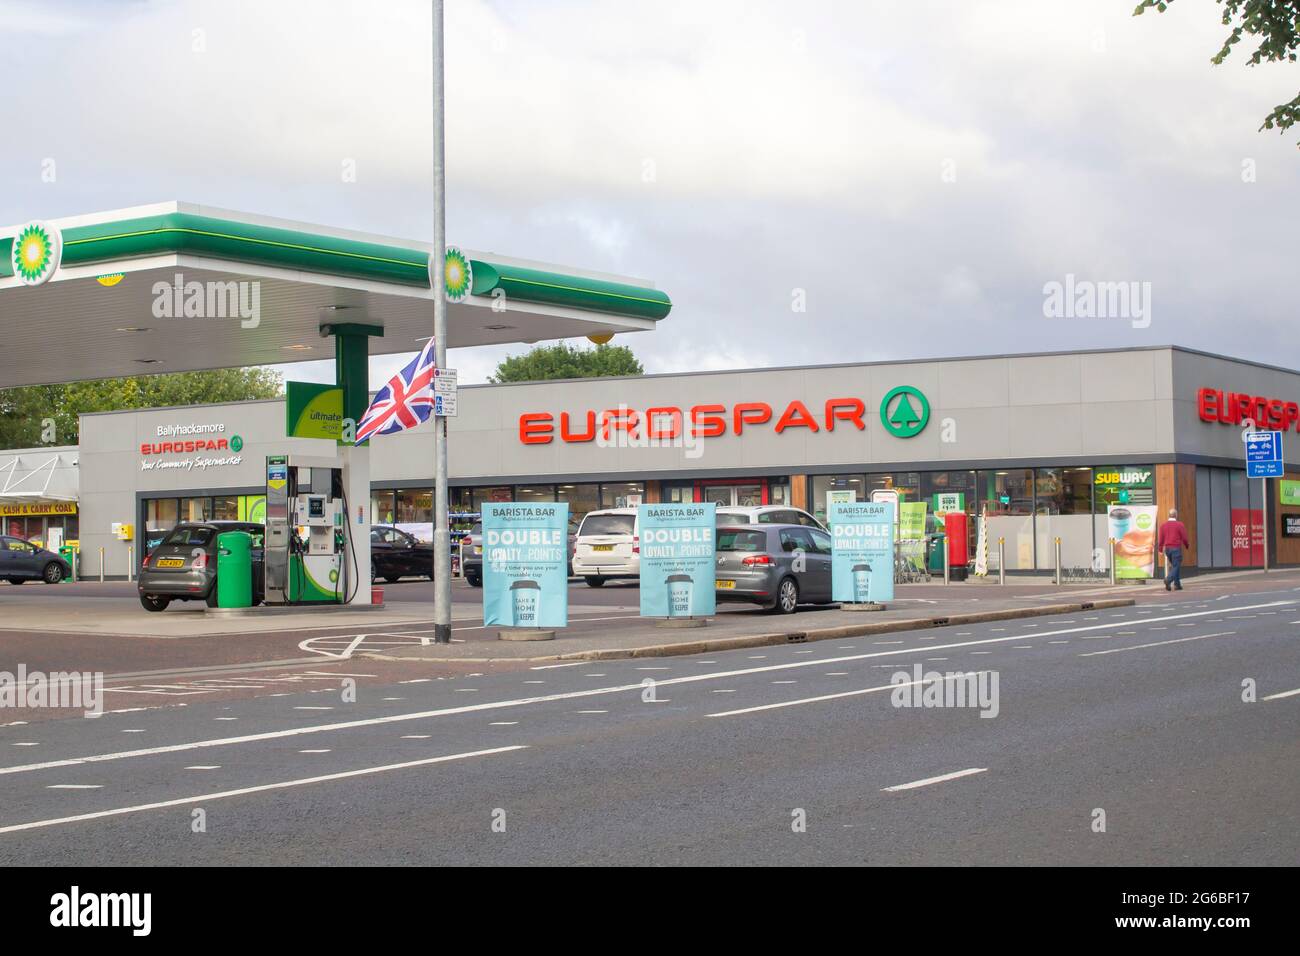 4 luglio 2021 Newtownards Road Belfast Irlanda del Nord UN moderno complesso commerciale al dettaglio che ospita un grande supermercato Eurospar e una stazione di rifornimento carburante p Foto Stock